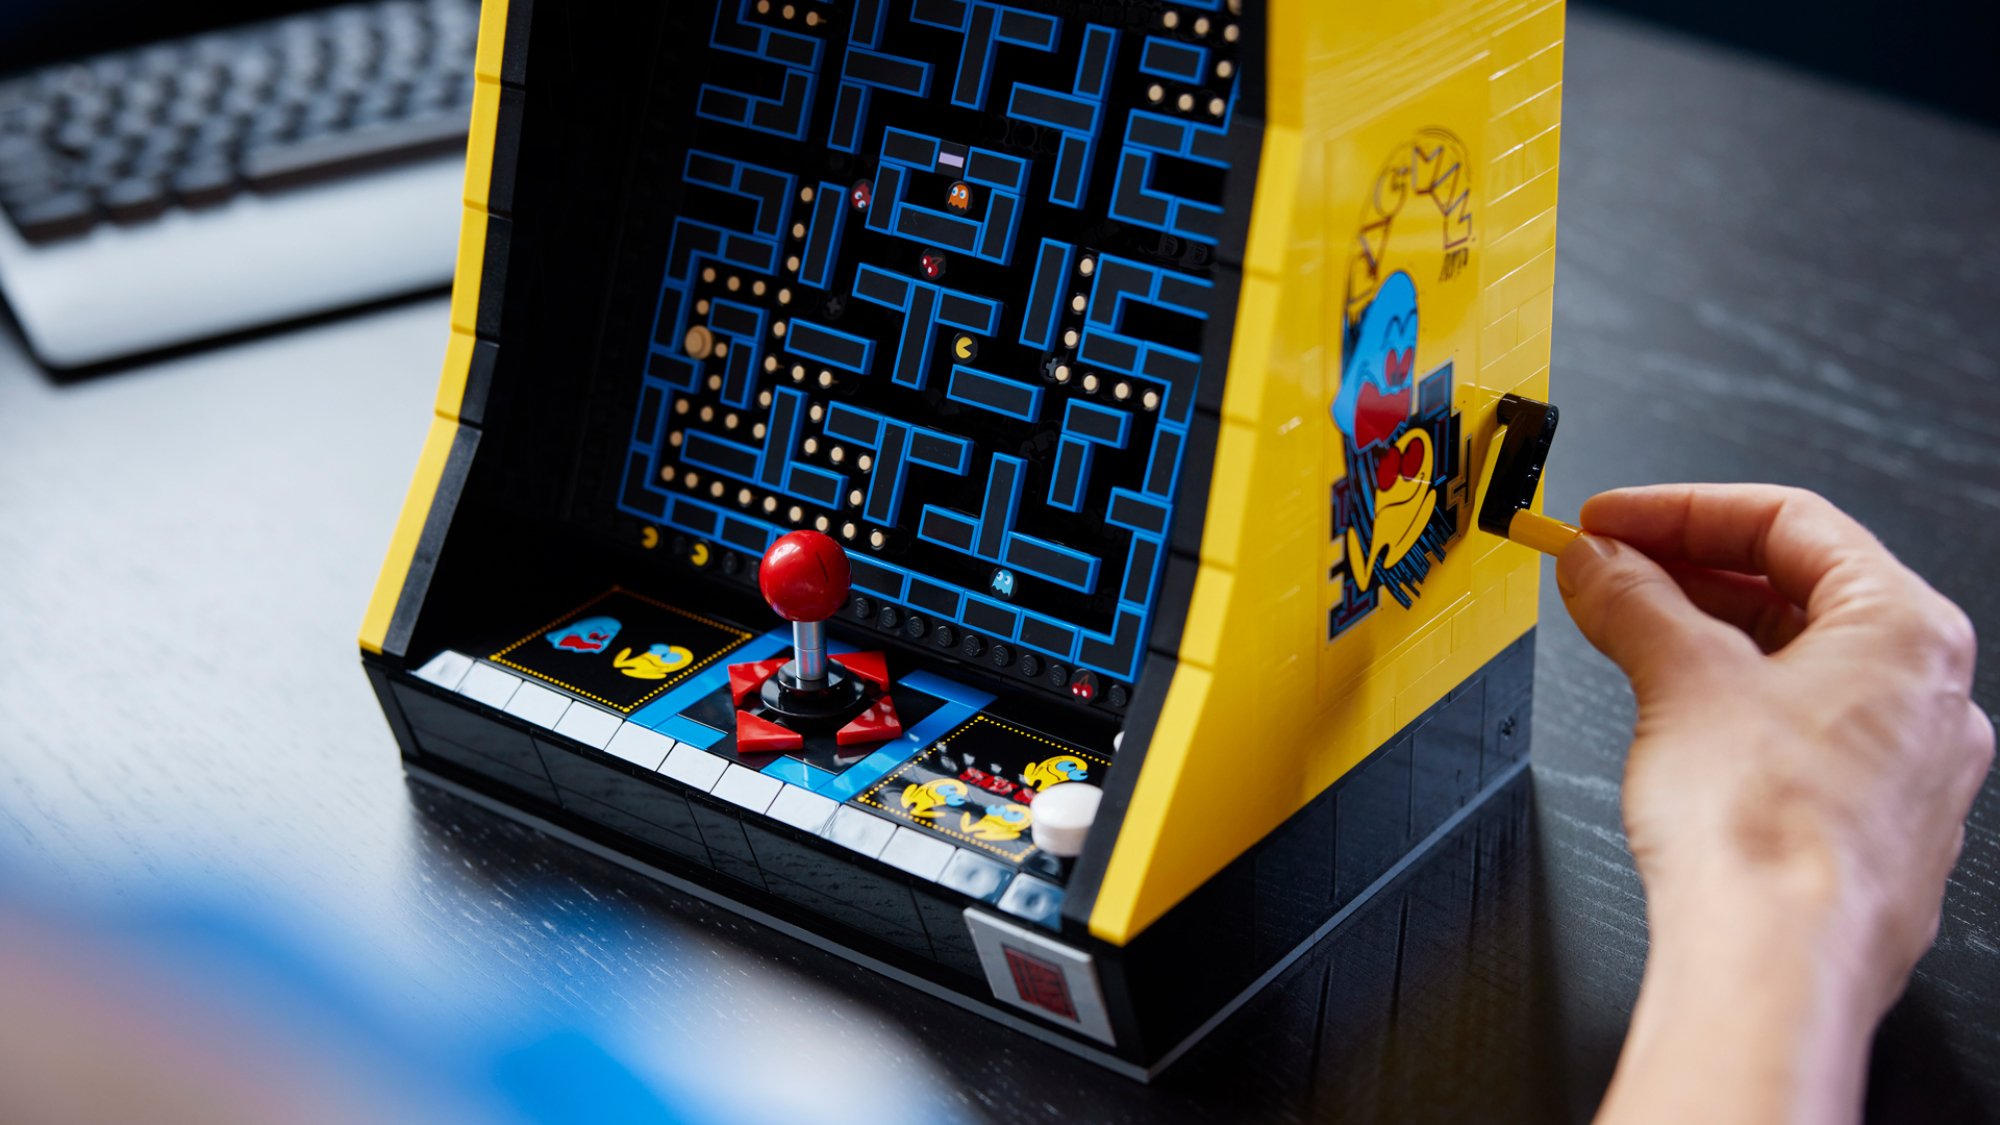 A Pac-Man arcade made of Lego.